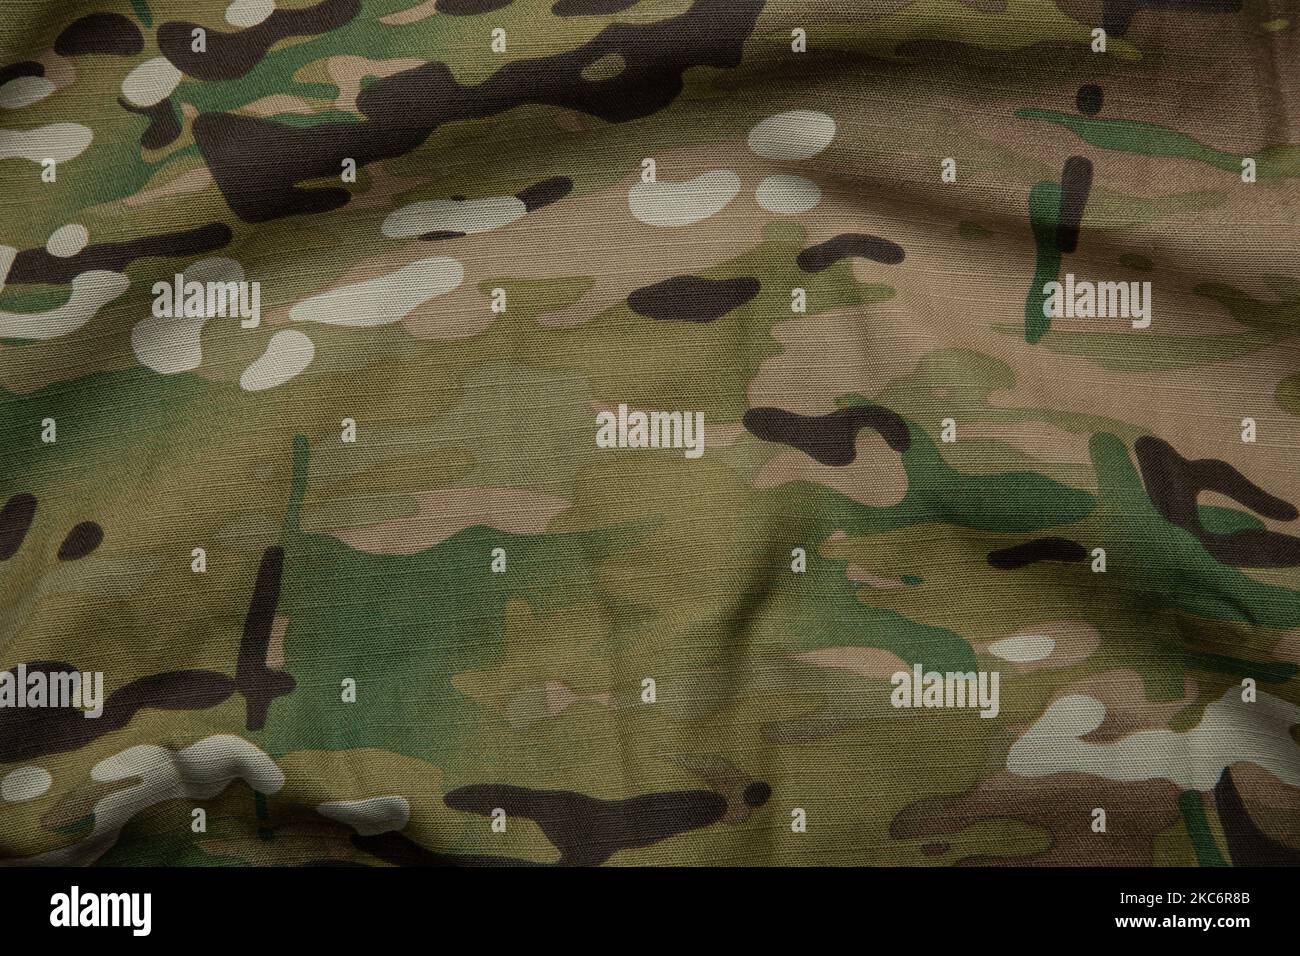 Bewaffnete Kraft multicam Camouflage Stoff Textur Hintergrund  Stockfotografie - Alamy